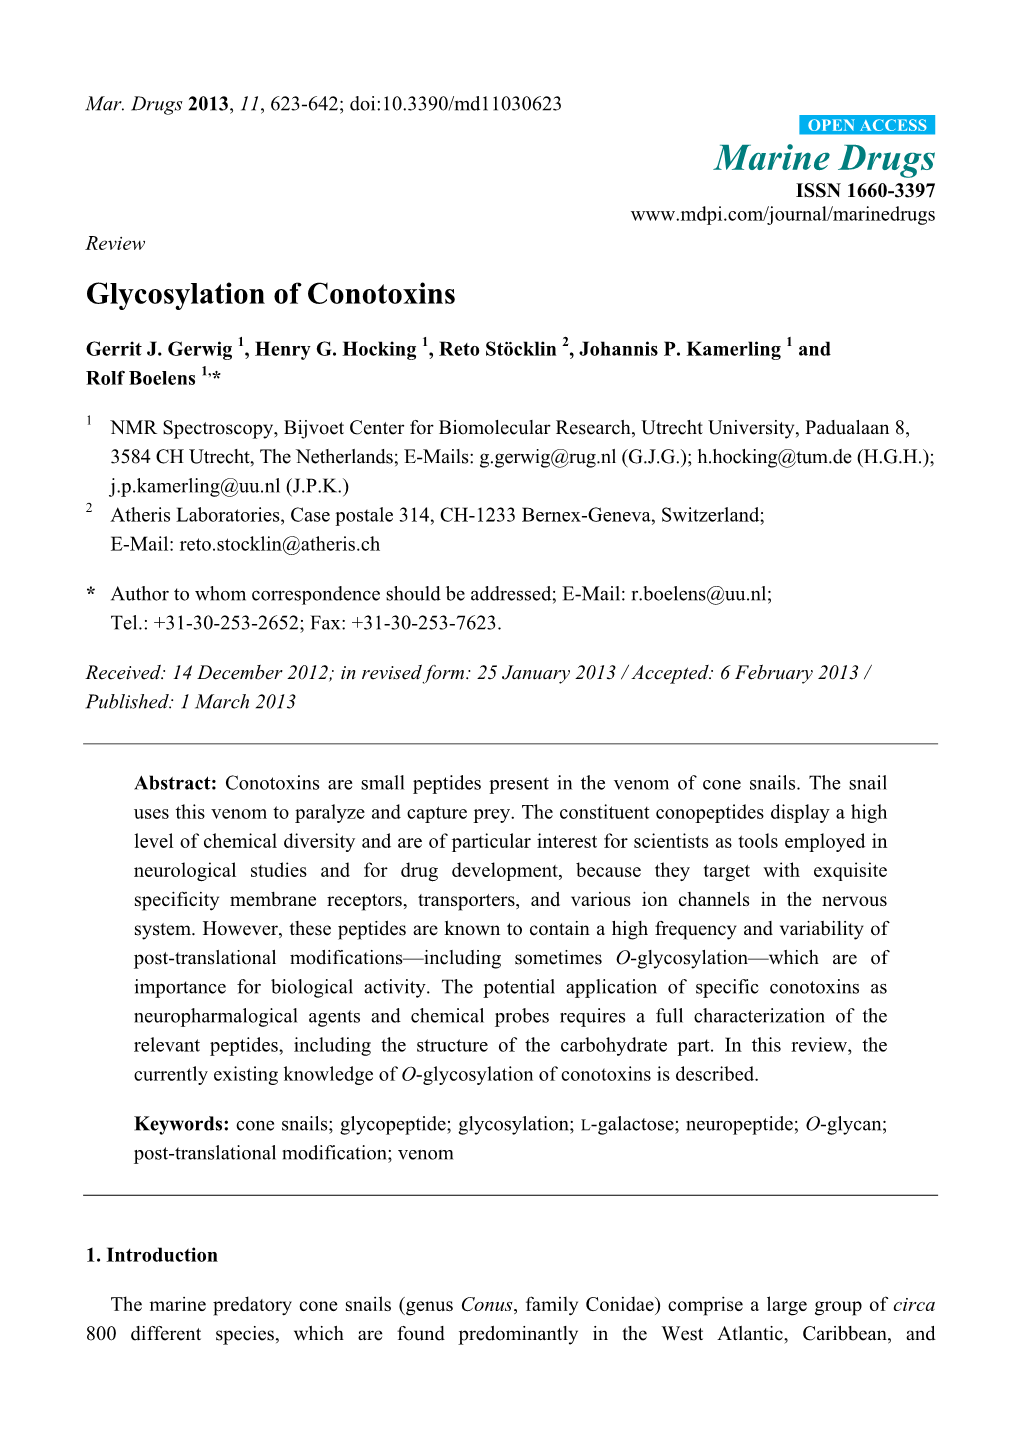 Glycosylation of Conotoxins